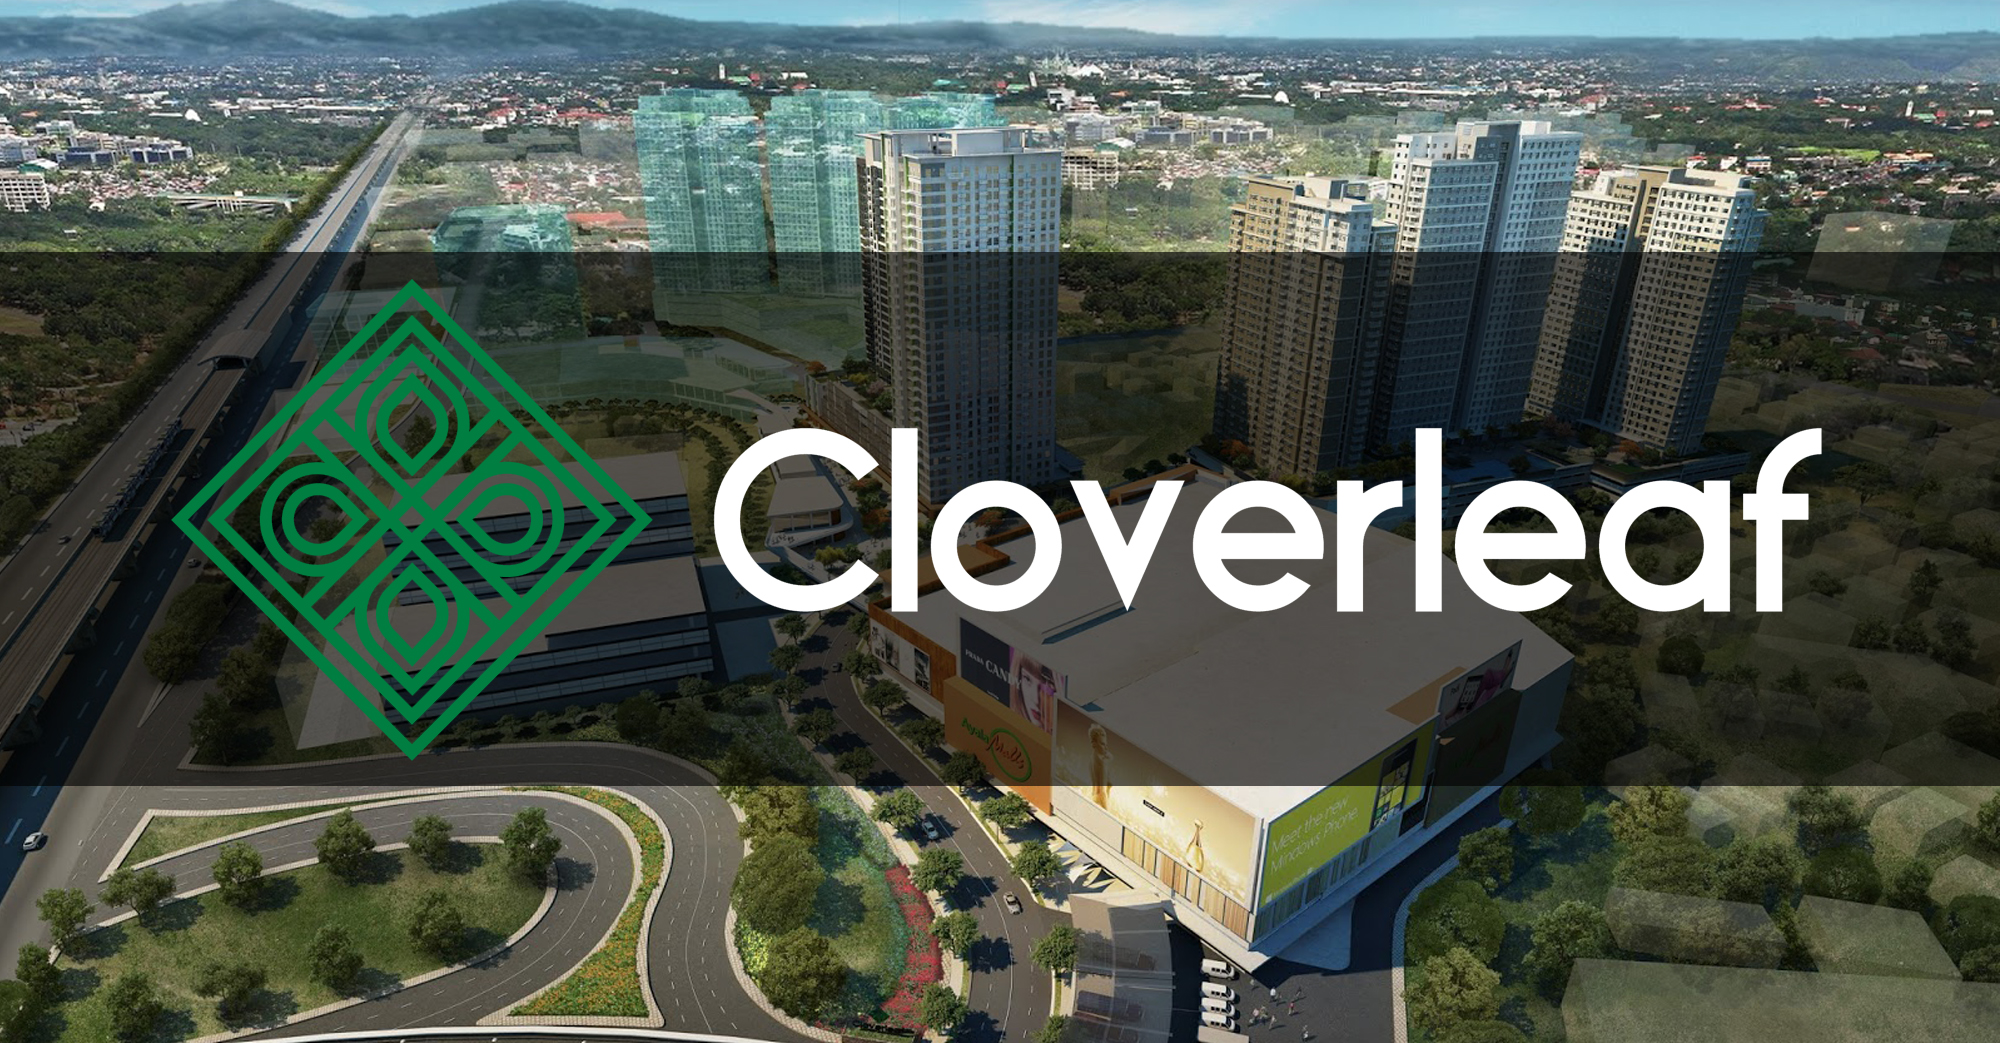 1-Cloverleaf